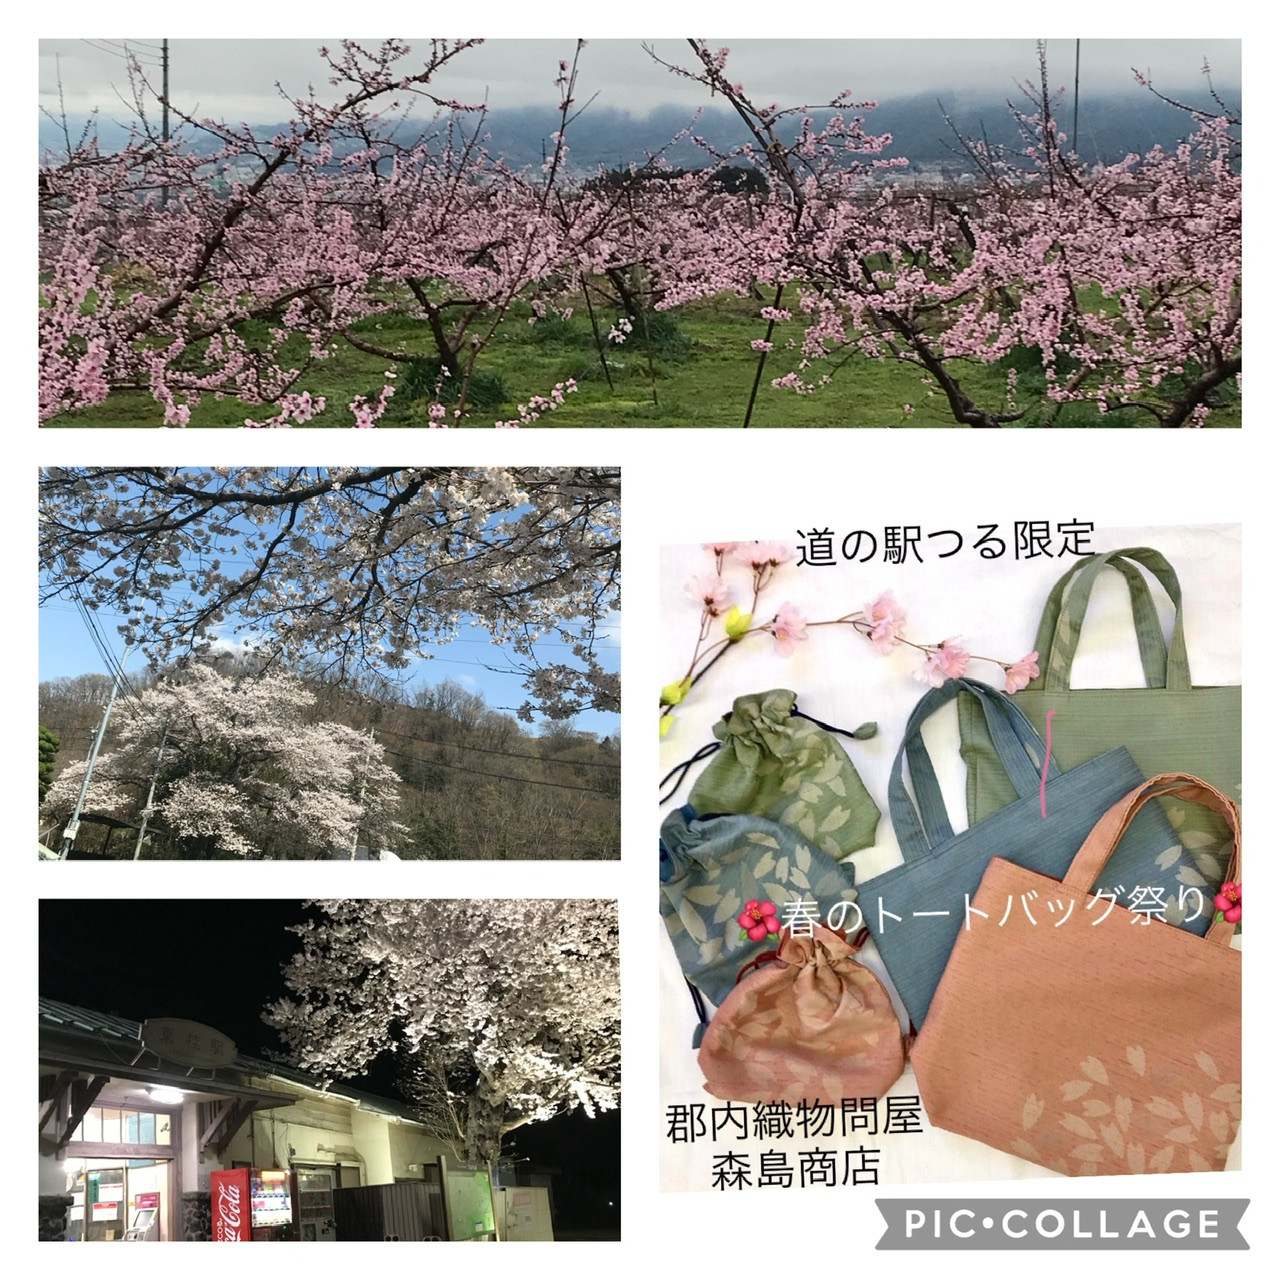 桜と桃と青空と。花盛り春の山梨へ🌺「道の駅つる限定春のトートバッグ祭」やってます。